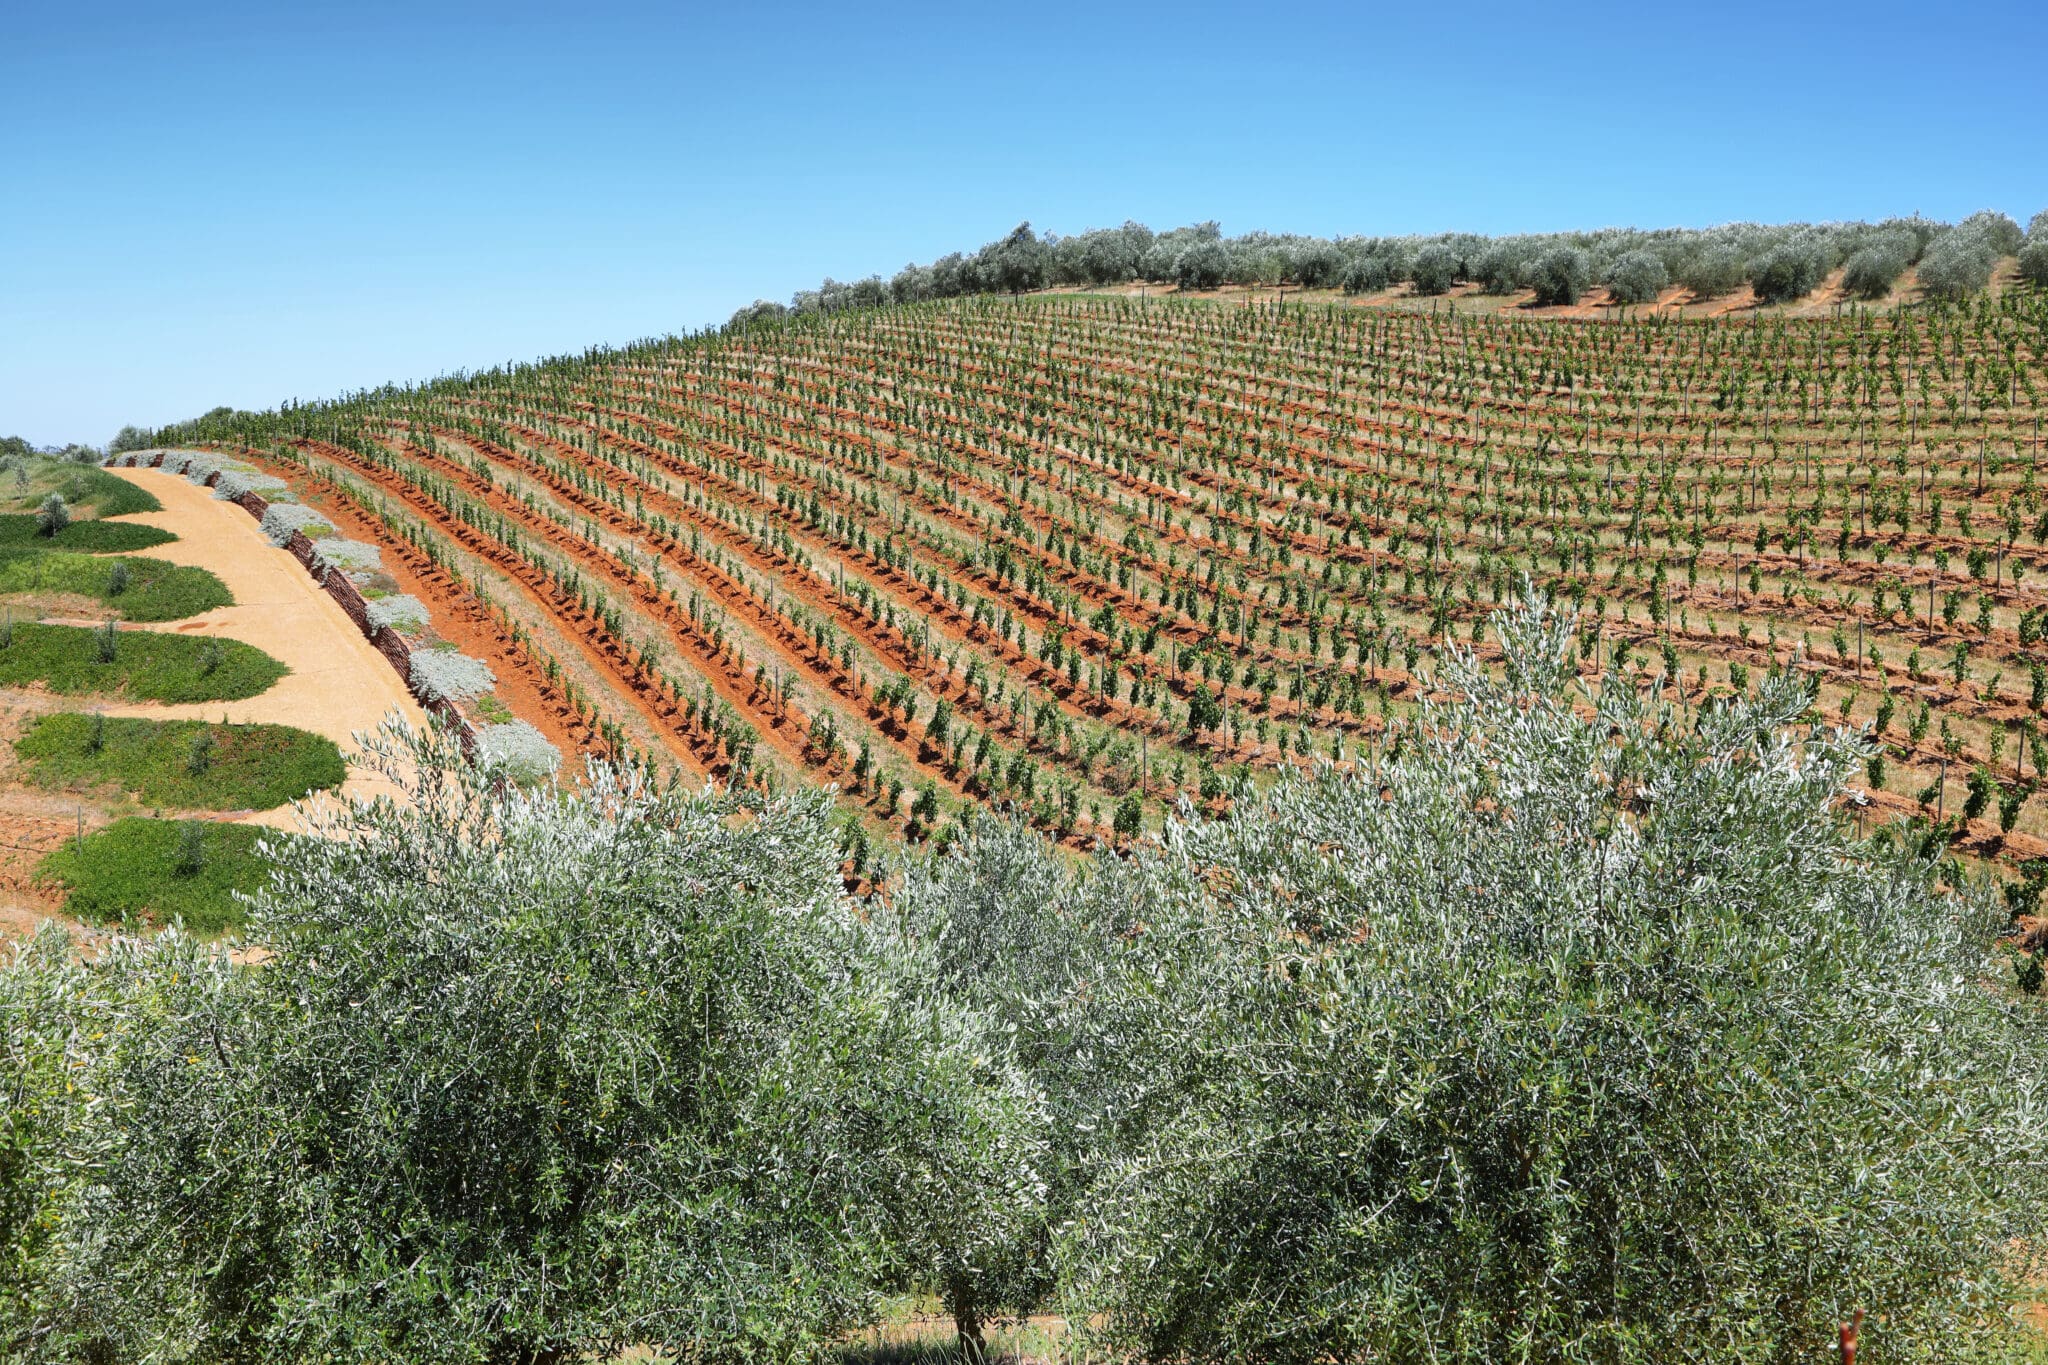 Vineyards landscape in Delaire Graff estate, South Africa